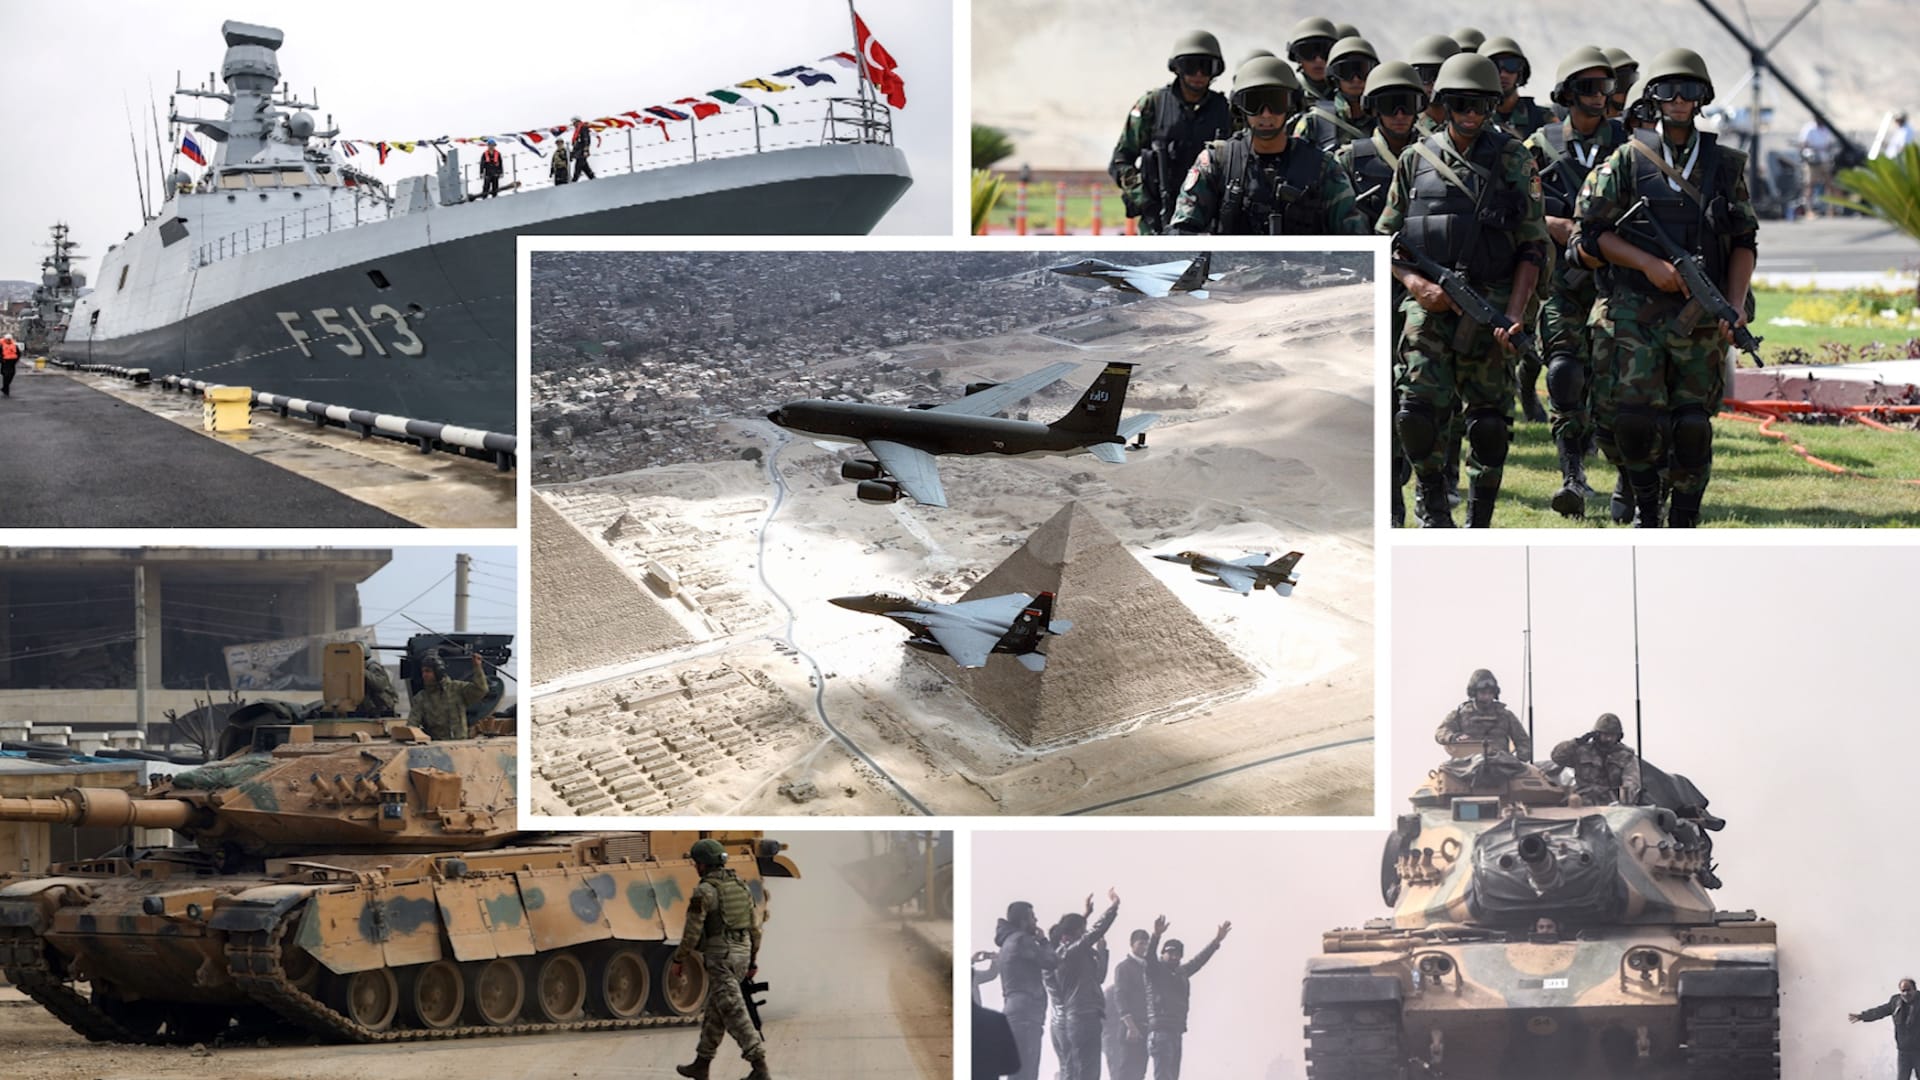 بين جيشي مصر وتركيا.. أيهما يحتل تصنيفات عسكرية أعلى وفق إحصائية 2021؟